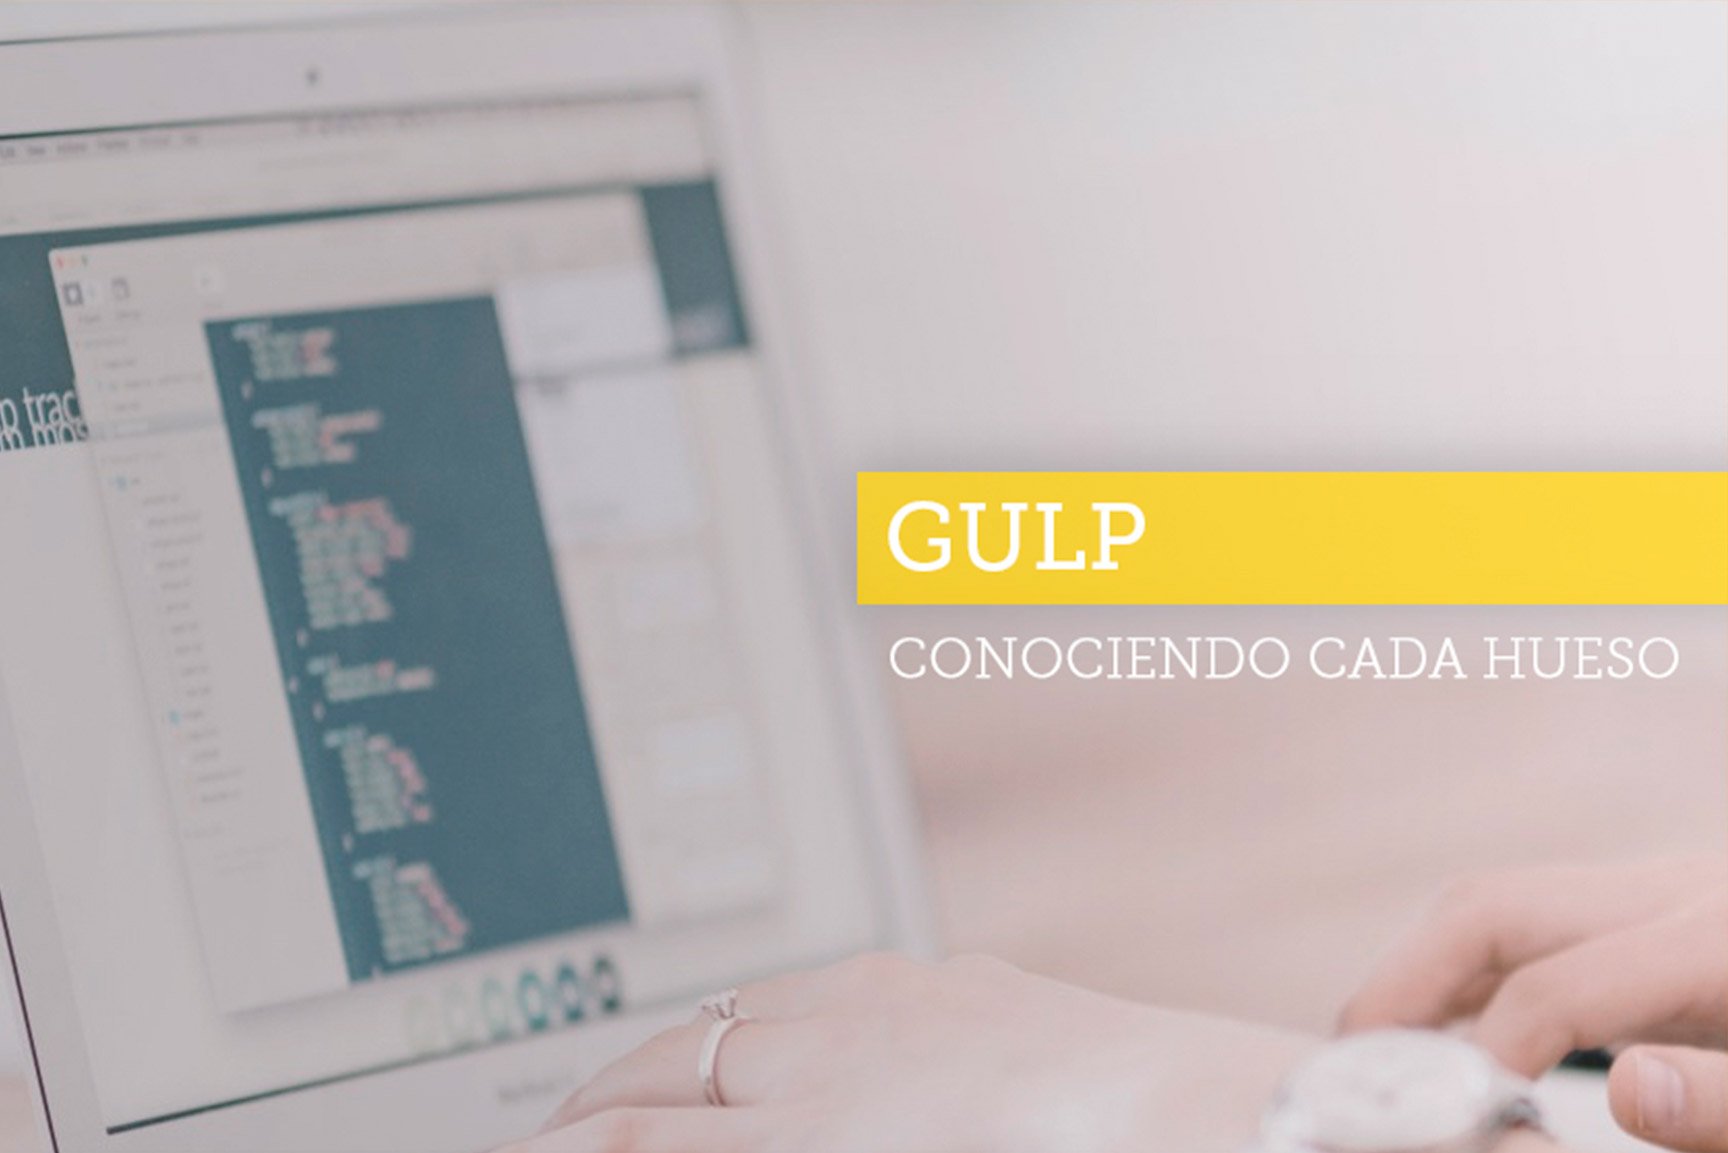 h_gulp_inicia_conociendo_cada_hueso